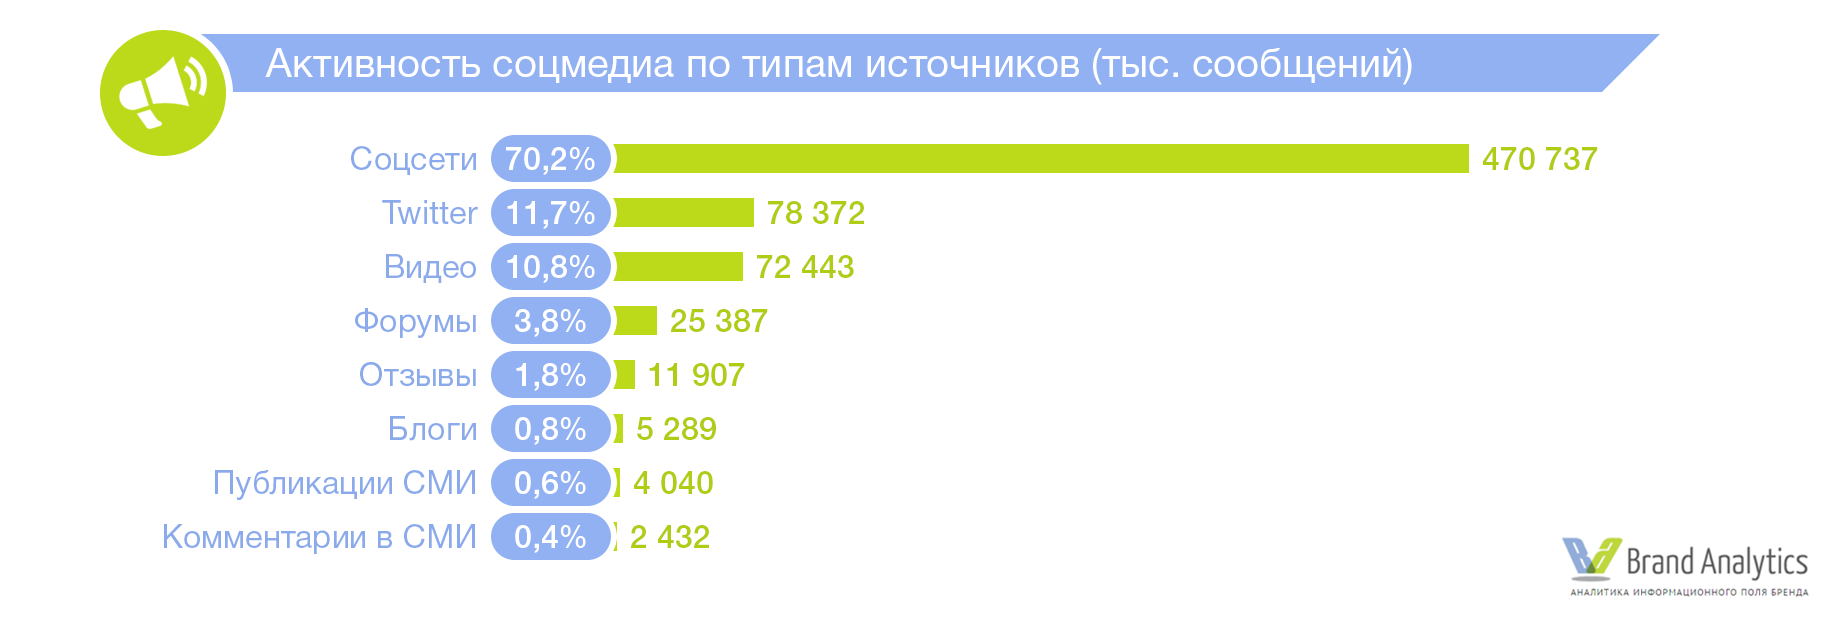 Социальный интернет список сайтов. Самые популярные социальные сети. Популярность социальных сетей. Популярные соцсети в России. Активность в социальных сетях.